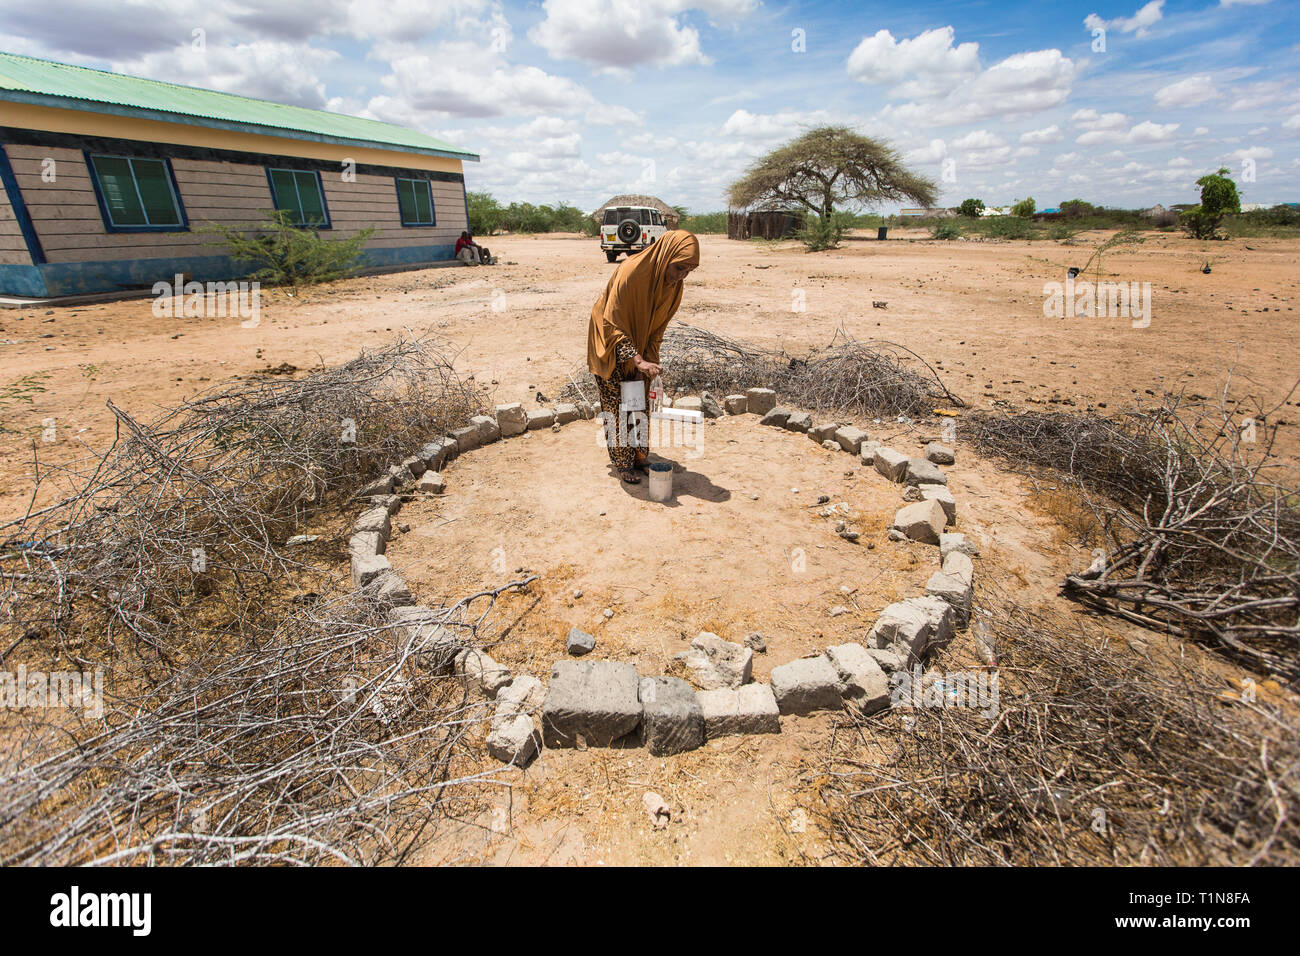 Une femme vérifie un pluviomètre dans son village d'Nanighi, situé dans le nord-est du Kenya, près de la frontière de la Somalie. Le Kenya, avec beaucoup de pays dans le monde en développement, repose toujours sur des milliers de bénévoles pour aider à enregistrer ce que il pleut. Banque D'Images